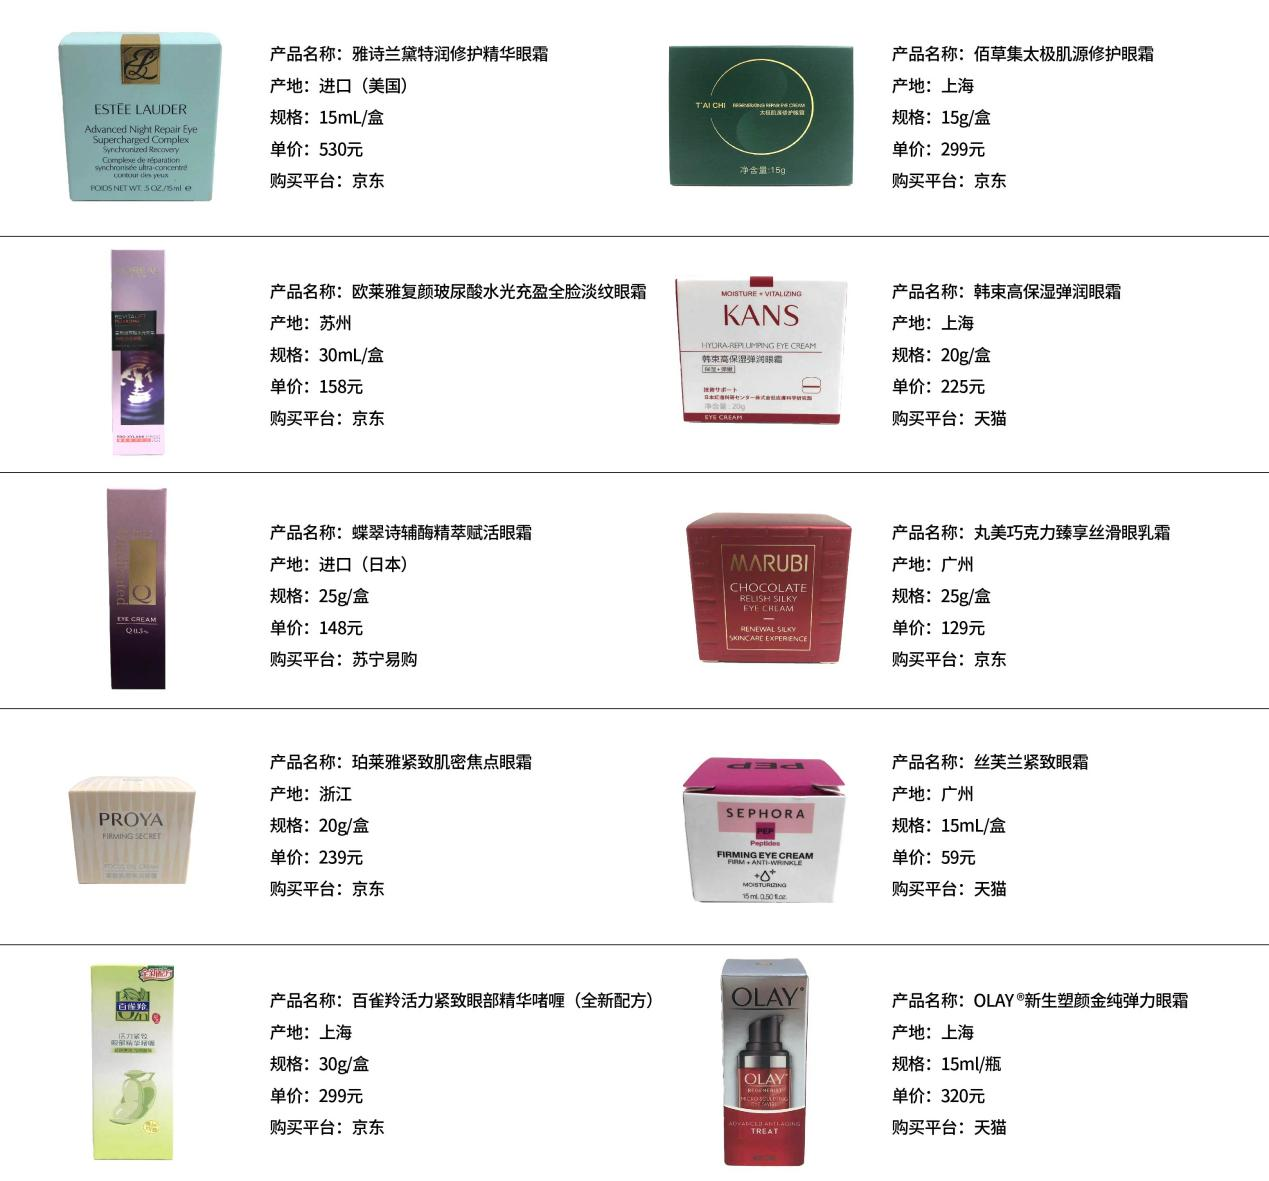 黑龙江省消费者协会发布10款眼霜比较试验结果